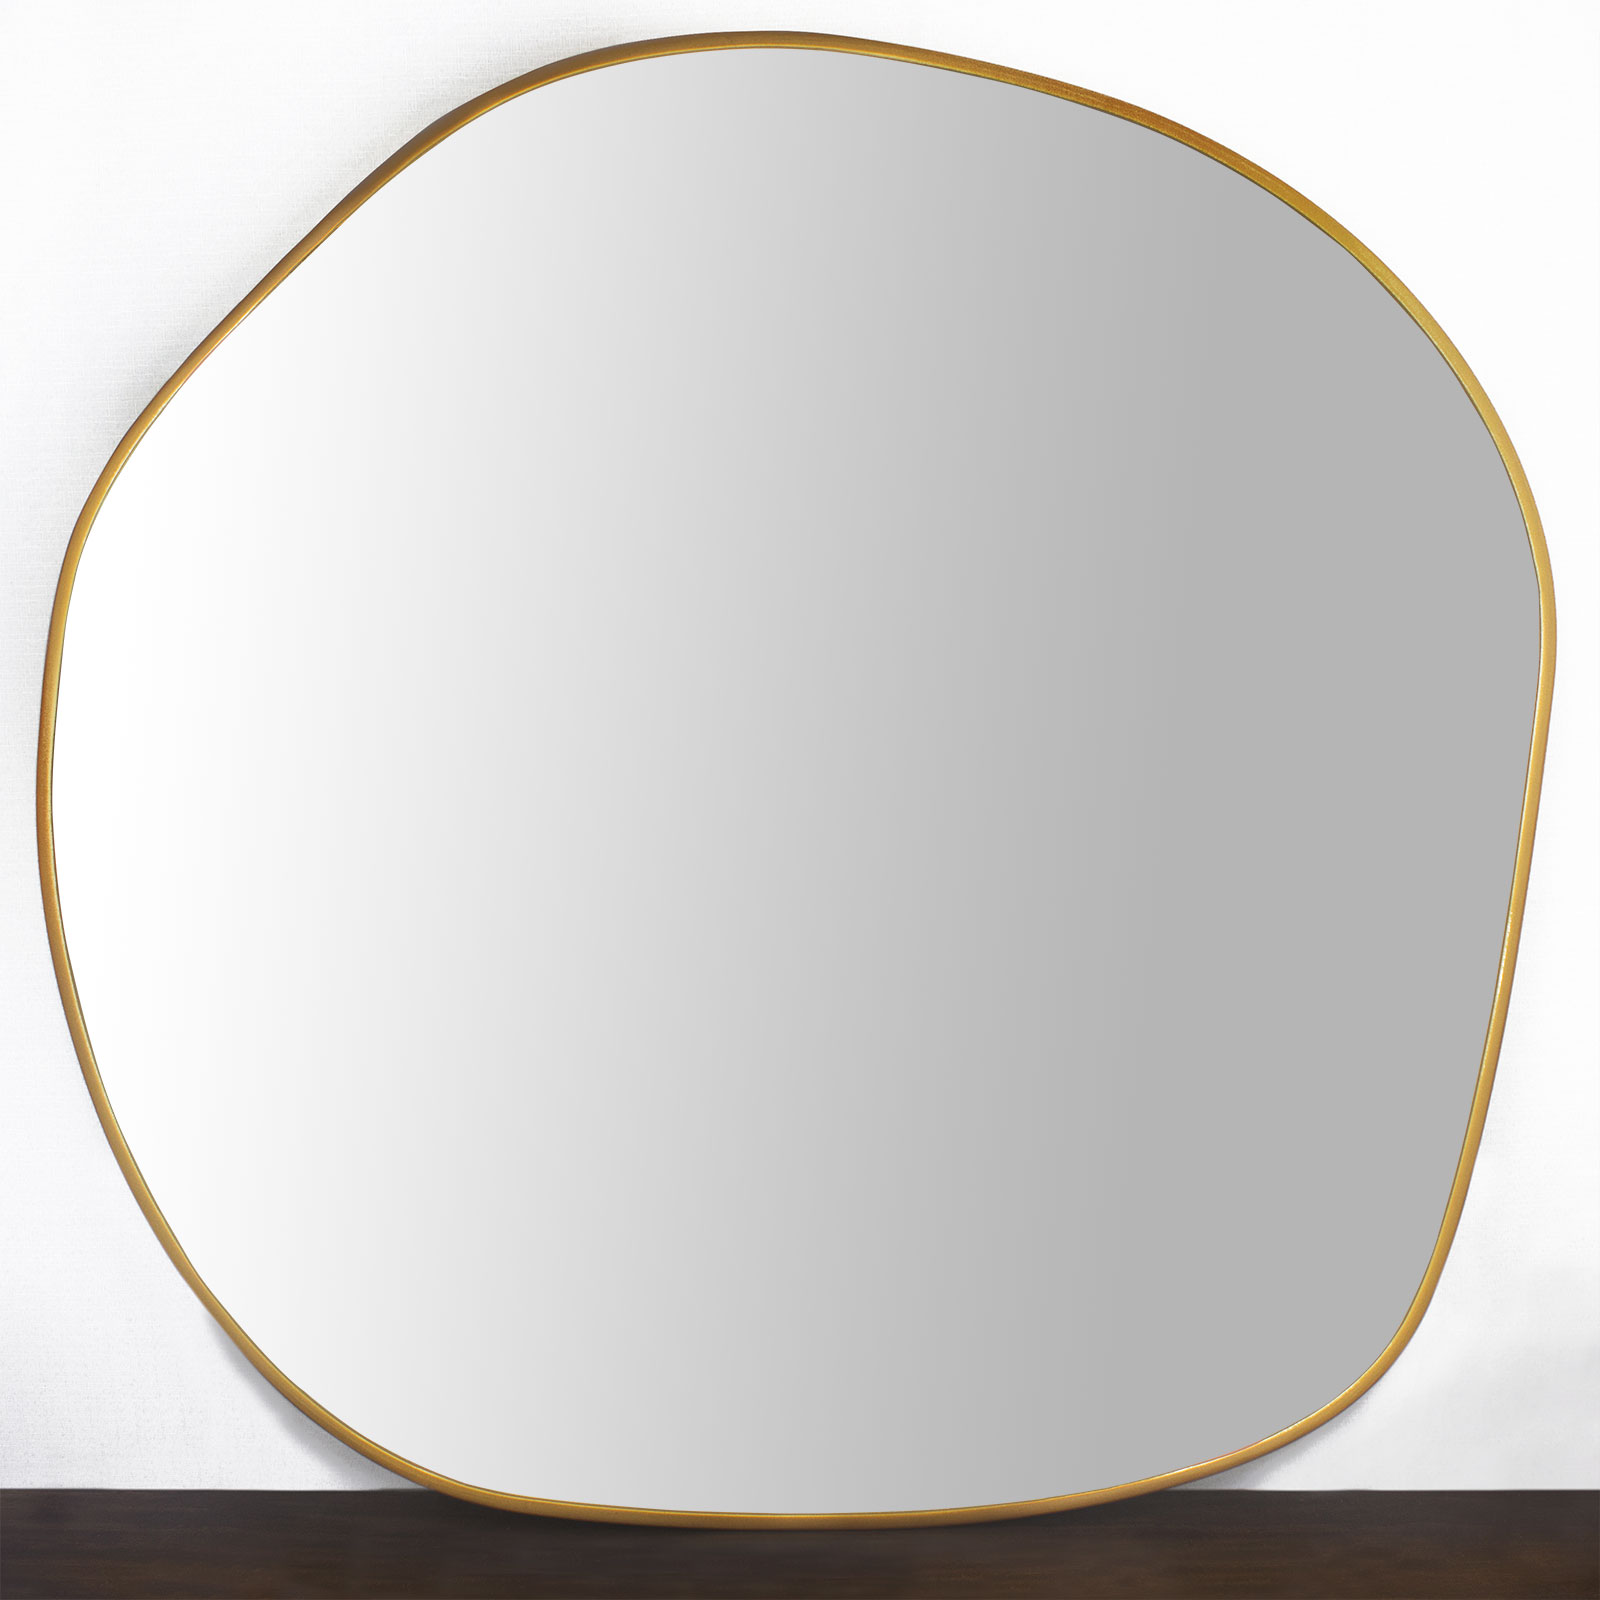 Moldura Org�nica Mdf Laqueada Dourada Brilho para Espelhos V�rias Medidas